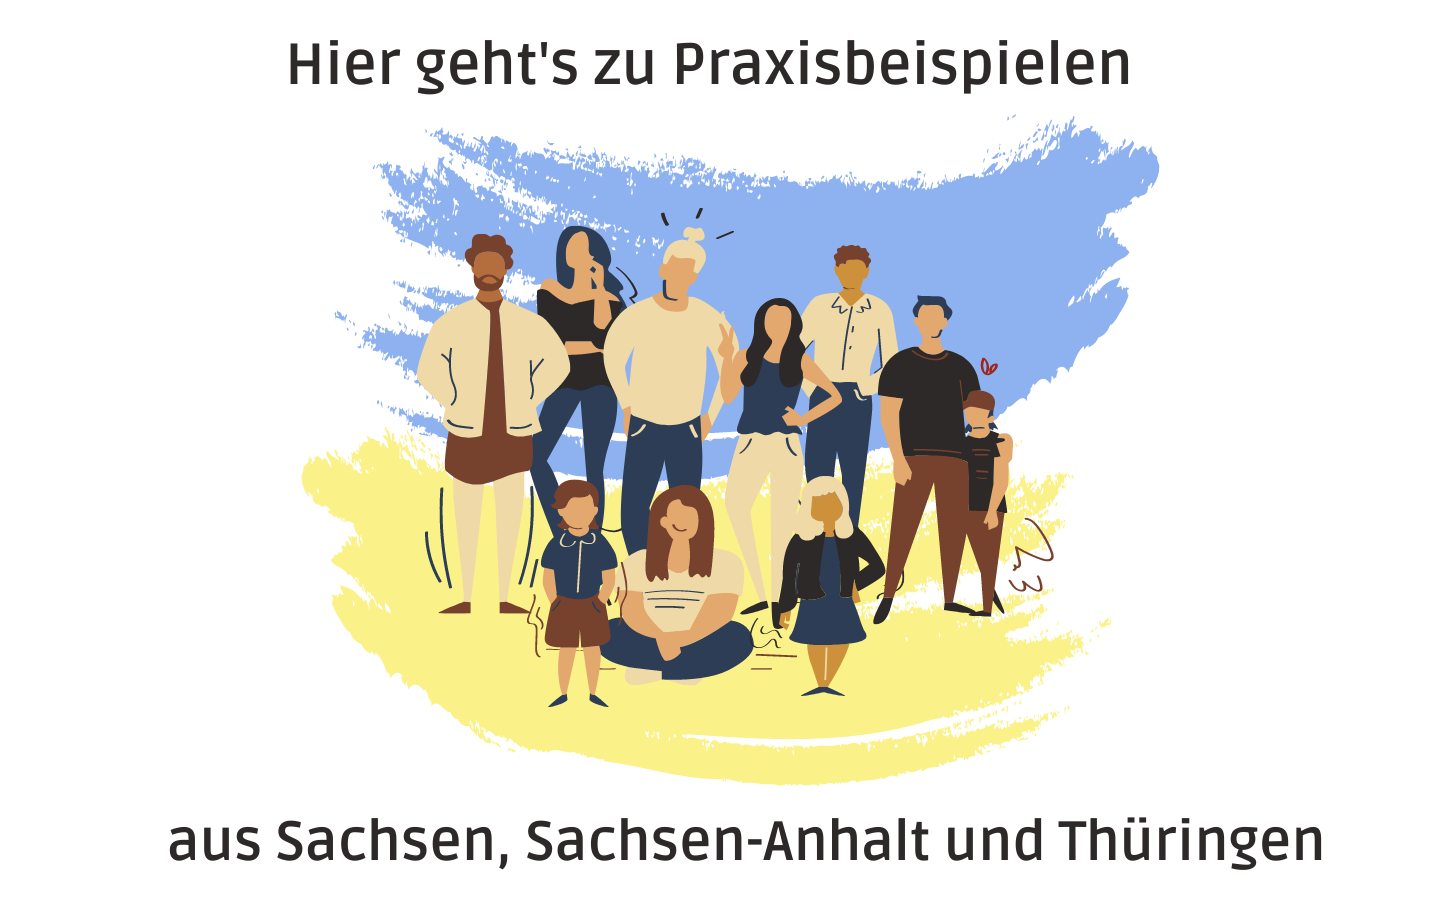 Zu den Praxisbeispielen aus Sachsen, Sachsen-Anhalt und Thüringen